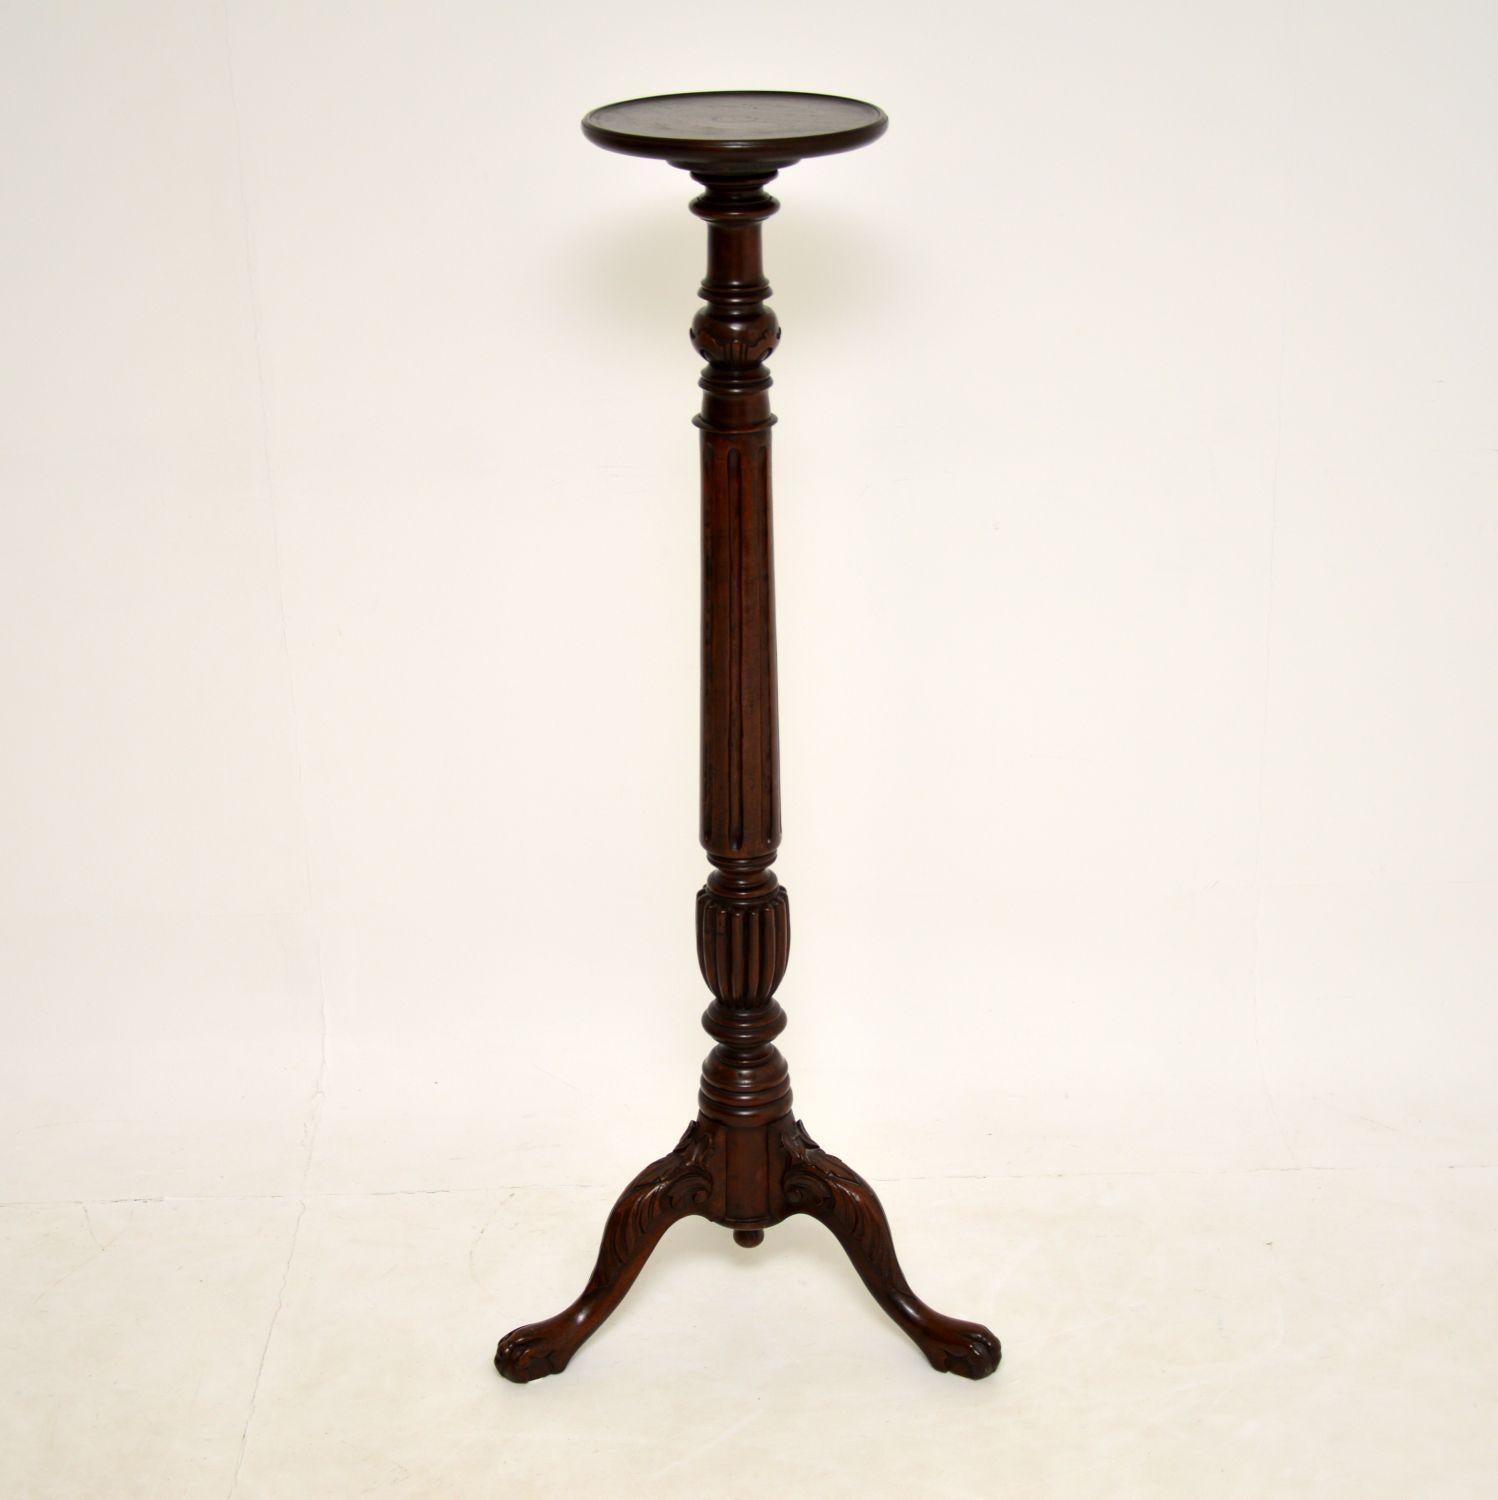 Eine schön geschnitzte antike Fackel / Pflanzentisch. Sie wurde in England in der viktorianischen Zeit hergestellt und stammt aus der Zeit zwischen 1850 und 1860.

Die Qualität ist erstaunlich, die Schnitzereien sind tief und fein ausgeführt. Der